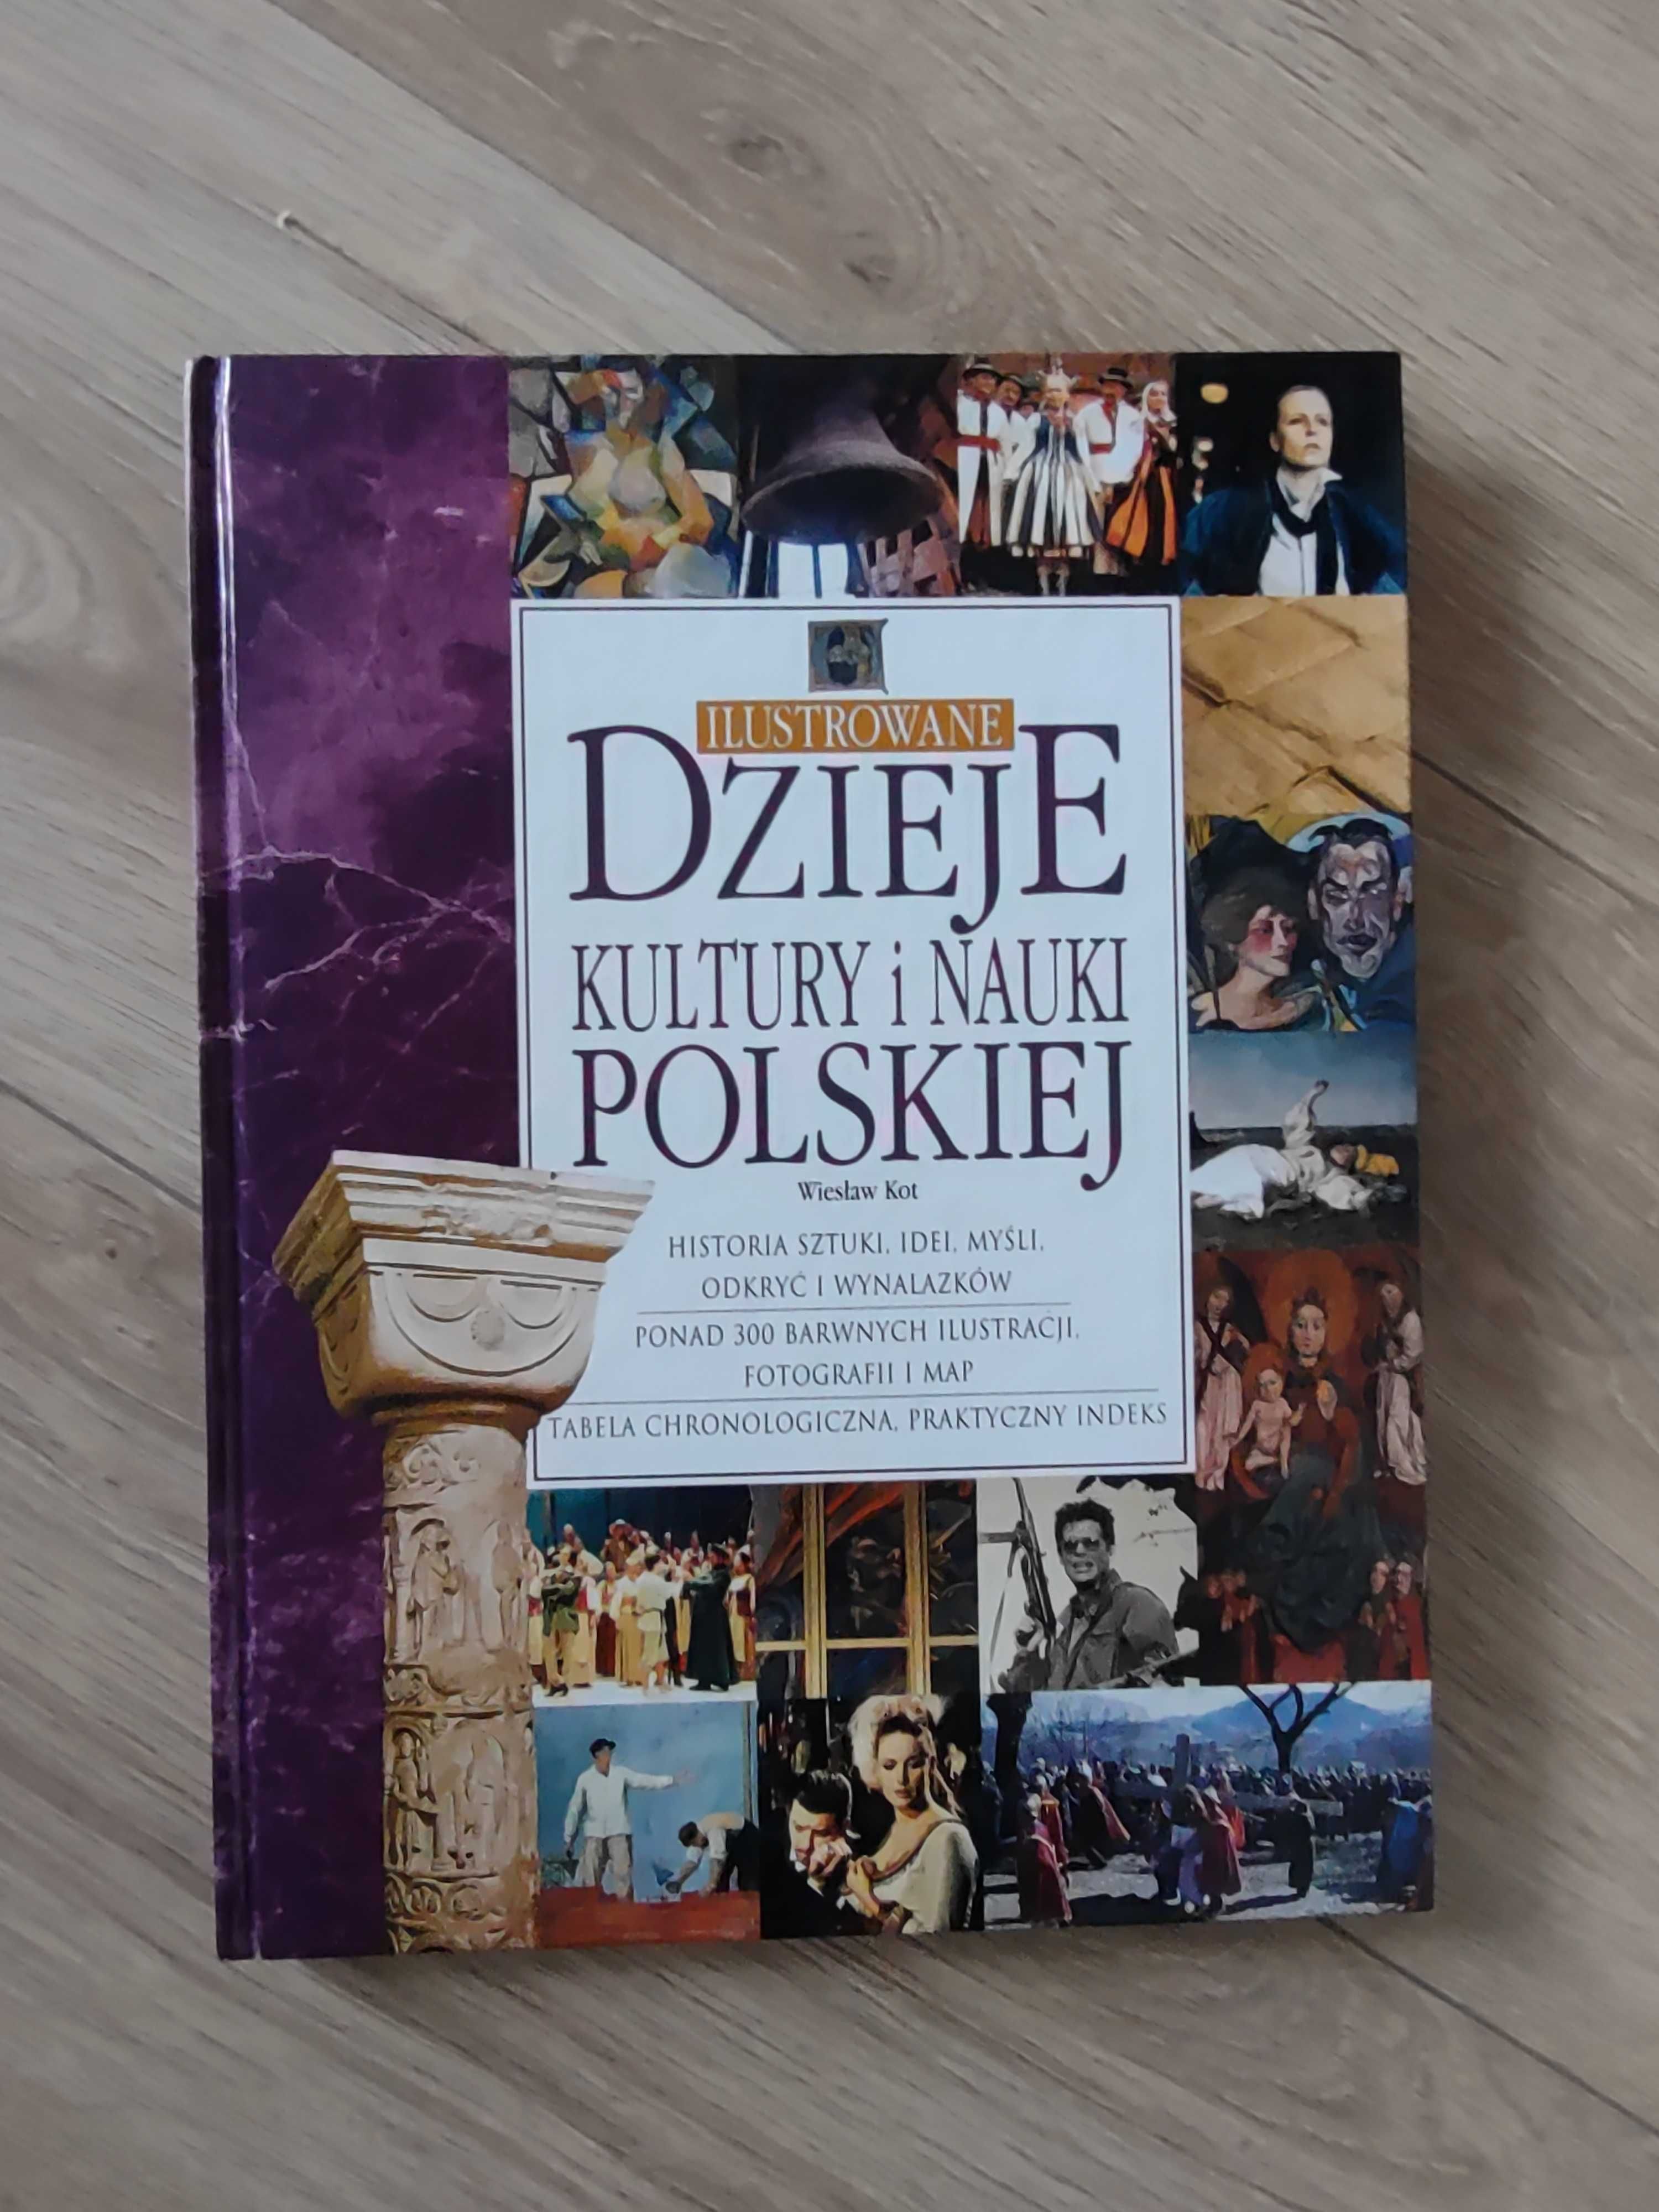 Dzieje kultury i nauki polskiej, Wiesław Kot